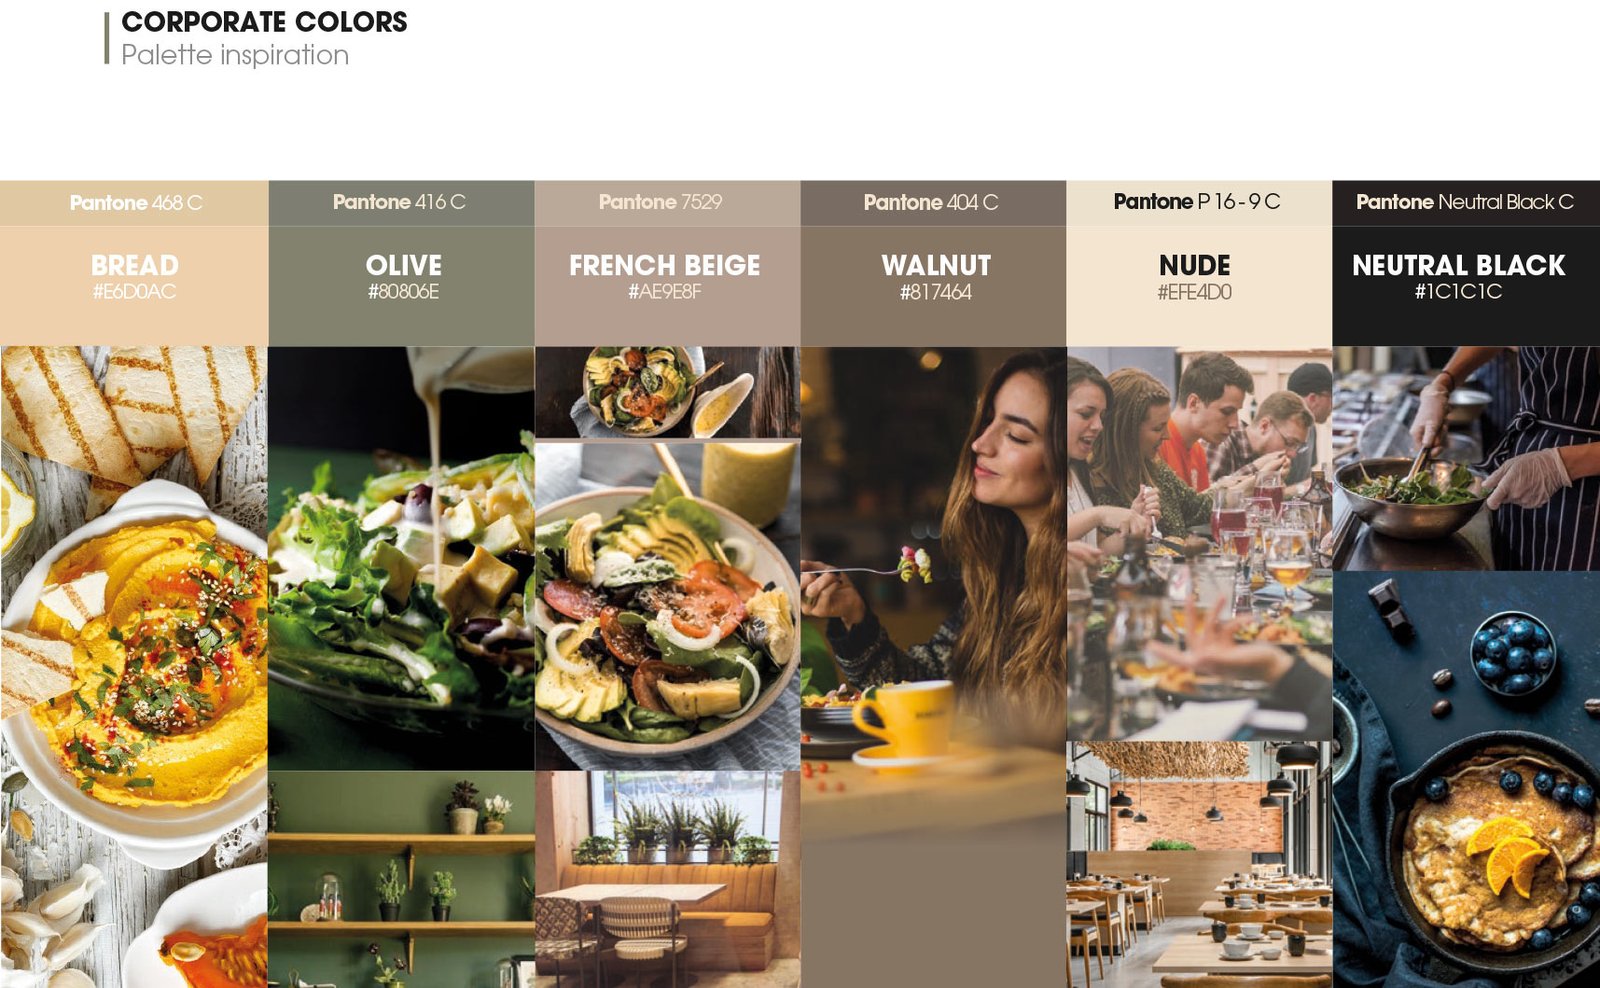 Paleta de colores para identidad corporativa restaurante